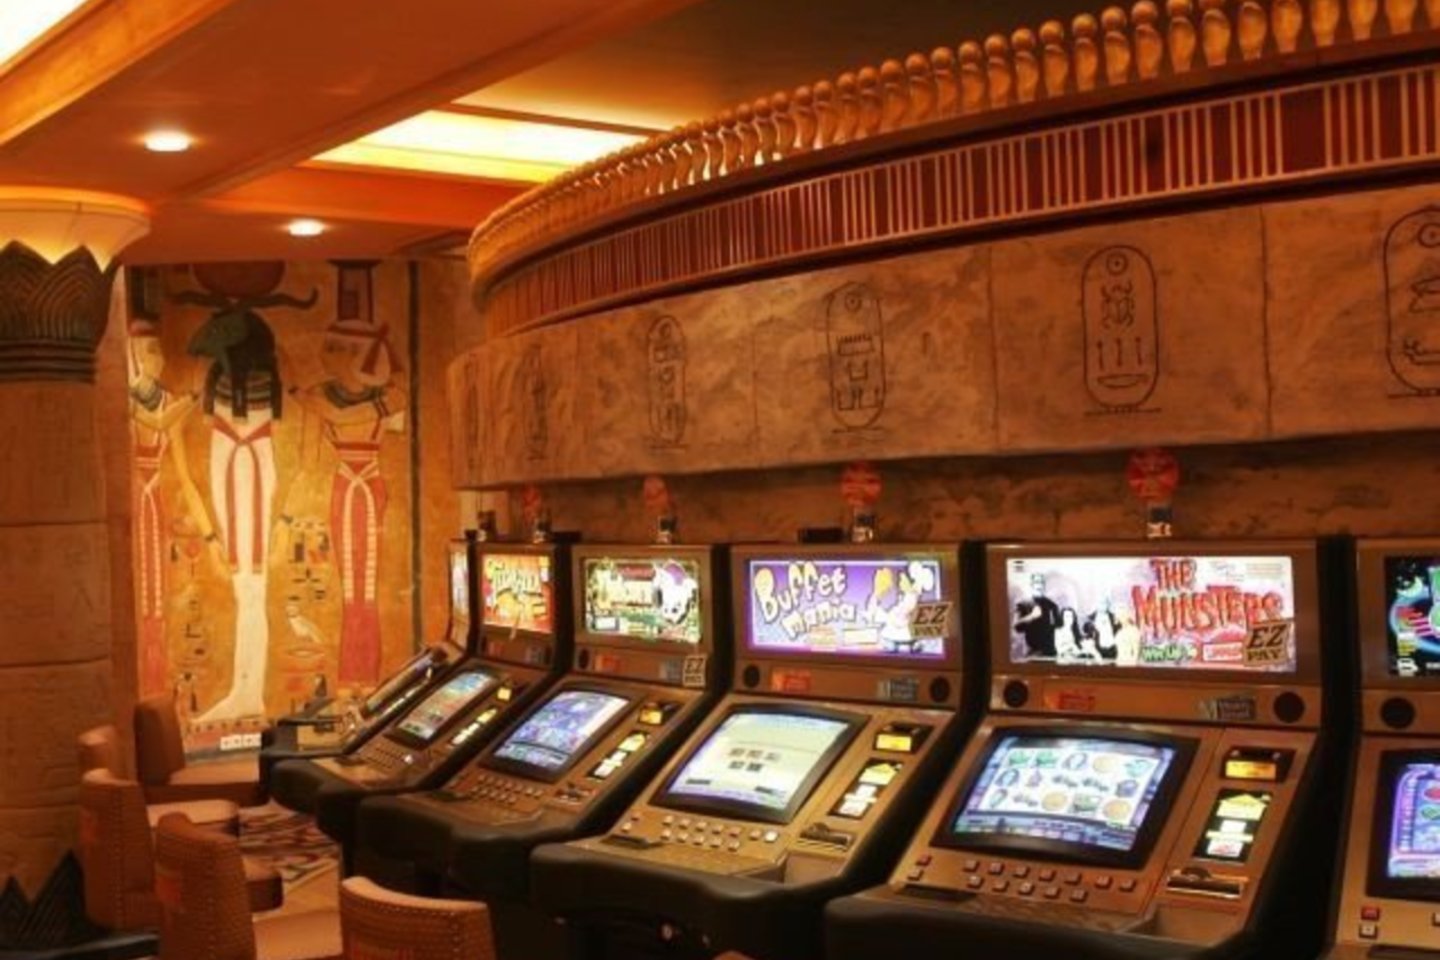 Sveikatos apsaugos ministerija (SAM) nustatė sąlygas, kurias įvykdžius galės veikti lošimo namai (kazino) ir lošimo automatų salonai.<br>A.Barzdžius